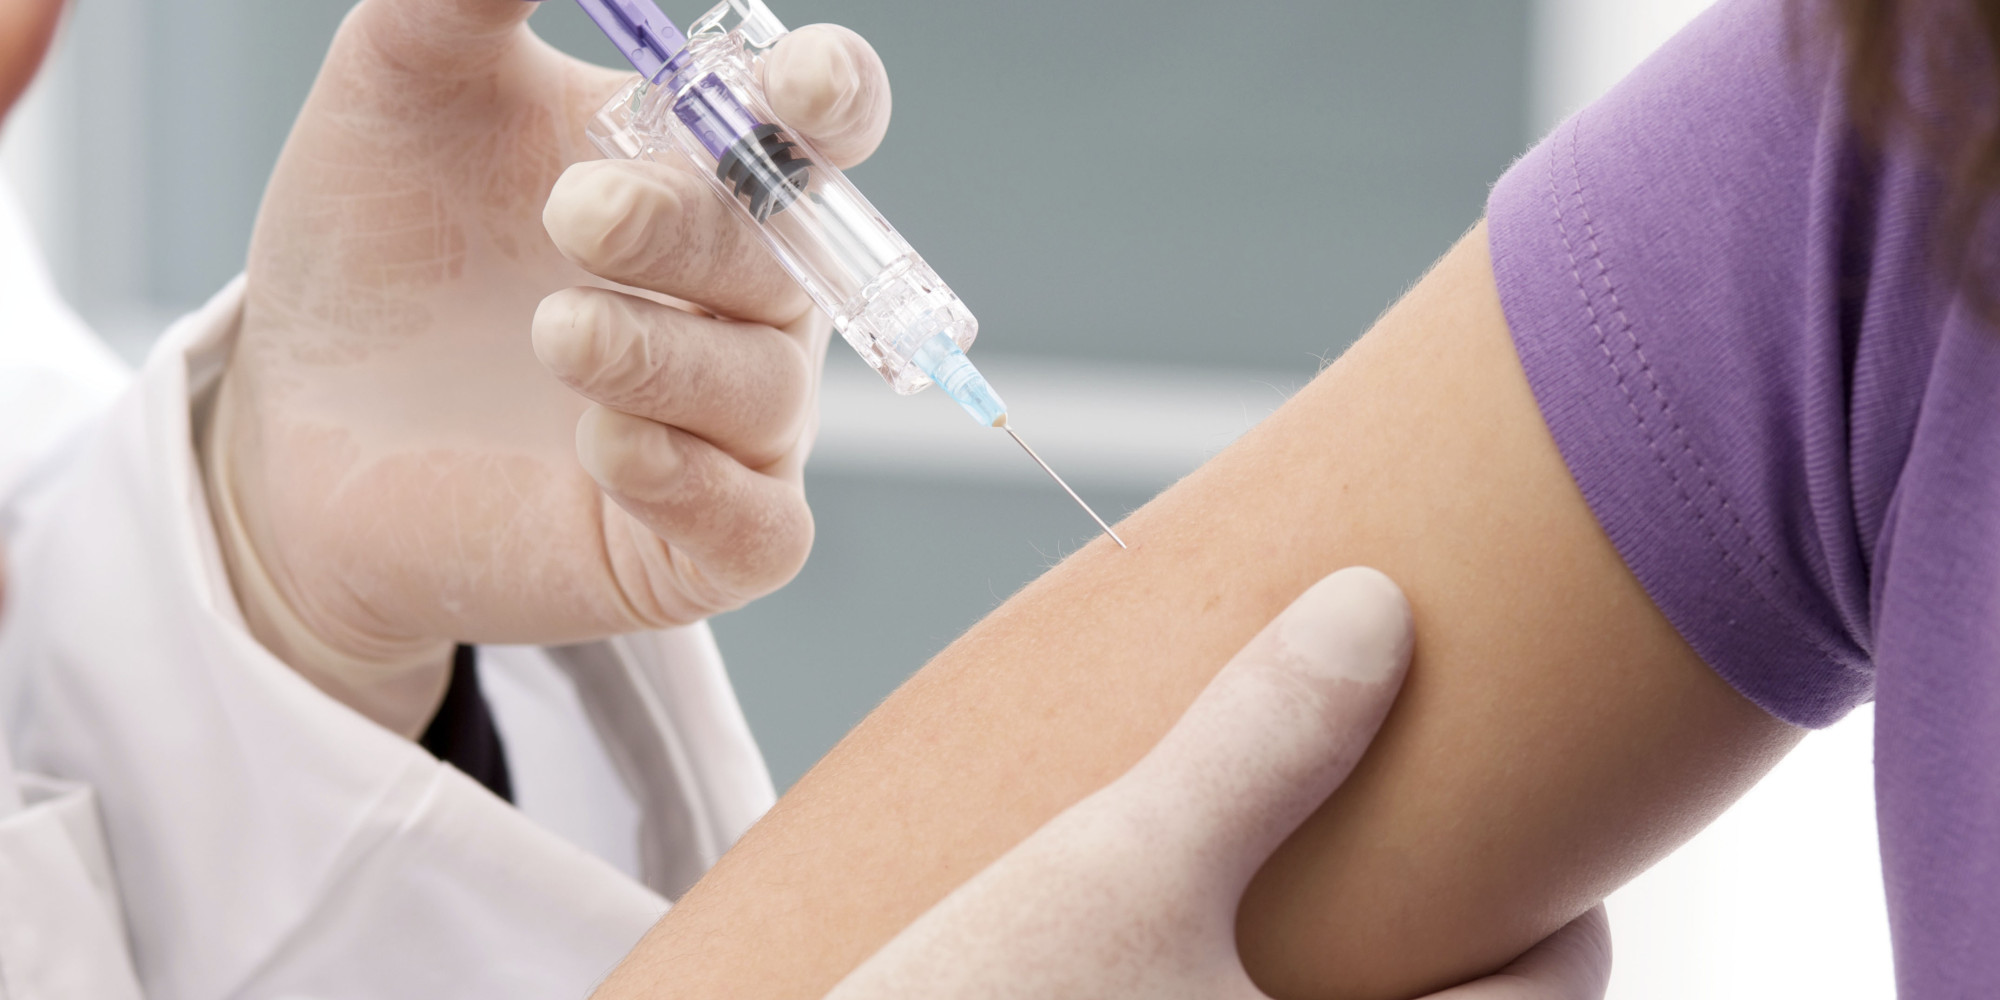 Οι στατίνες ίσως μειώνουν τη δράση του αντιγριπικού εμβολίου